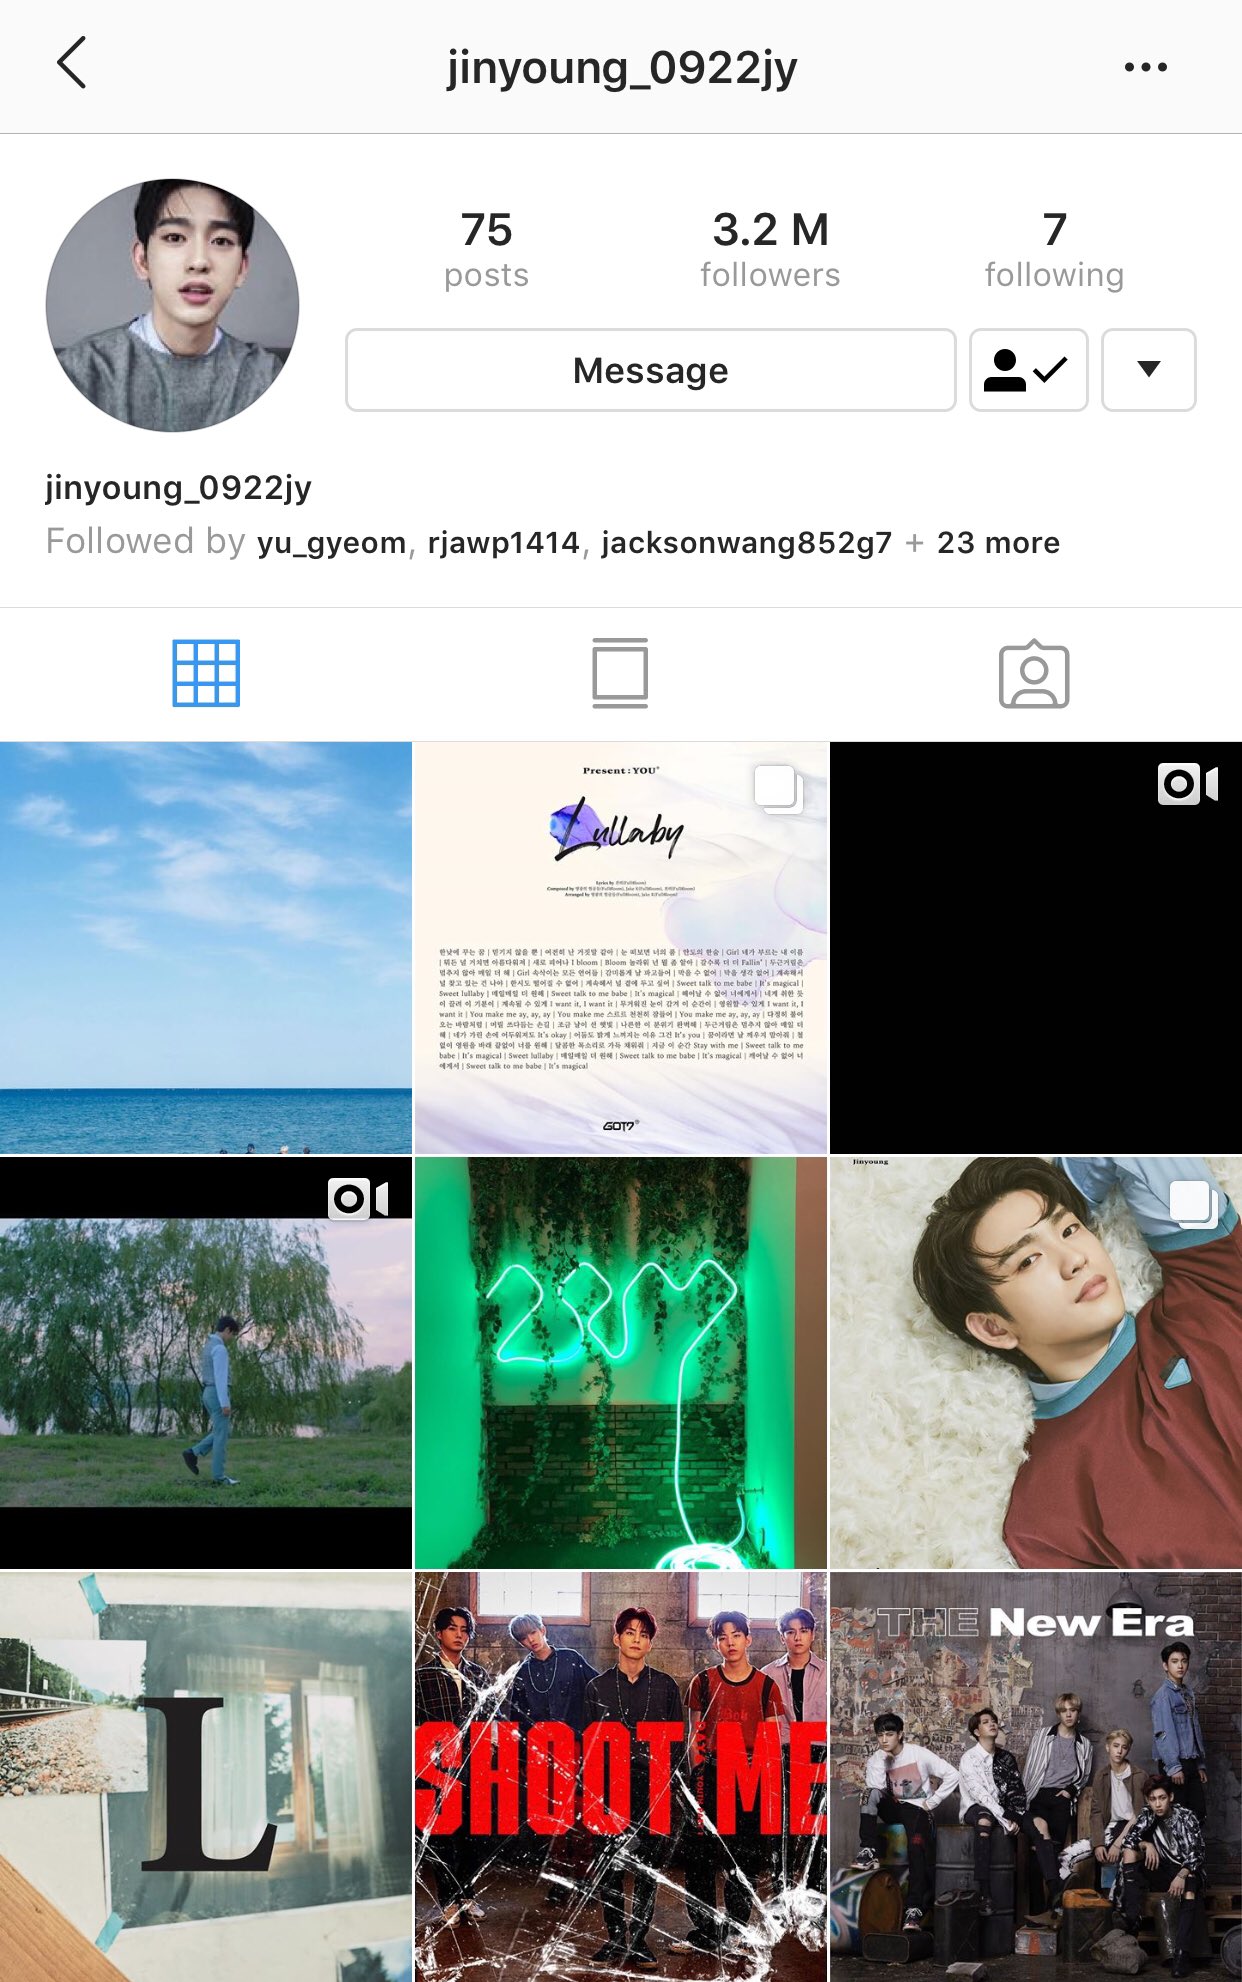 Hugo Gloss on X: Batatinha frita 1, 2, 3 e para tudo, porque o  protagonista de Round 6, Lee Jung-jae, se juntou ao Instagram! Em apenas  14 horas, o sul-coreano já ultrapassou